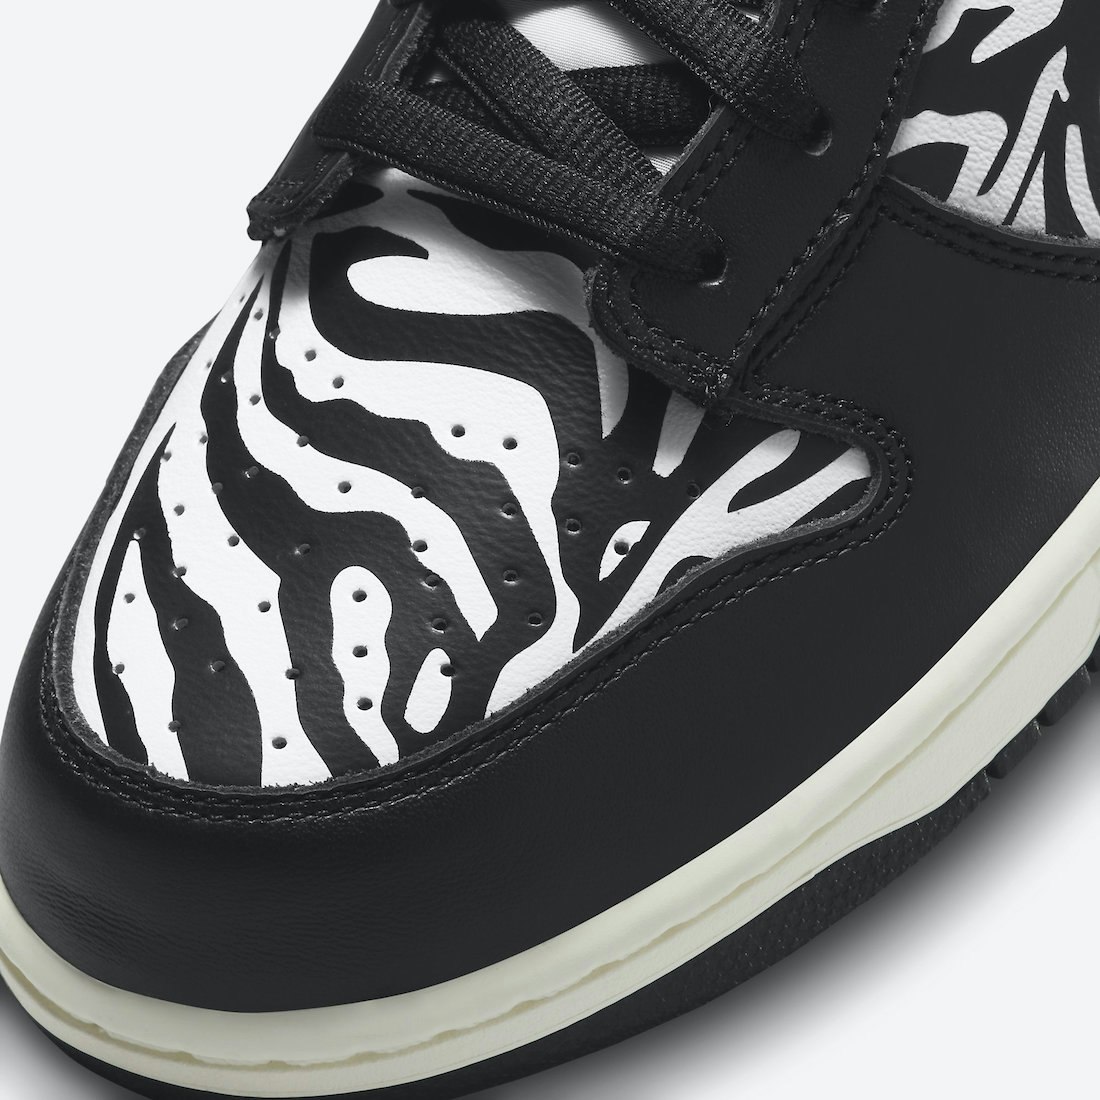 Quartersnacks x Nike SB Dunk Low “Zebra”